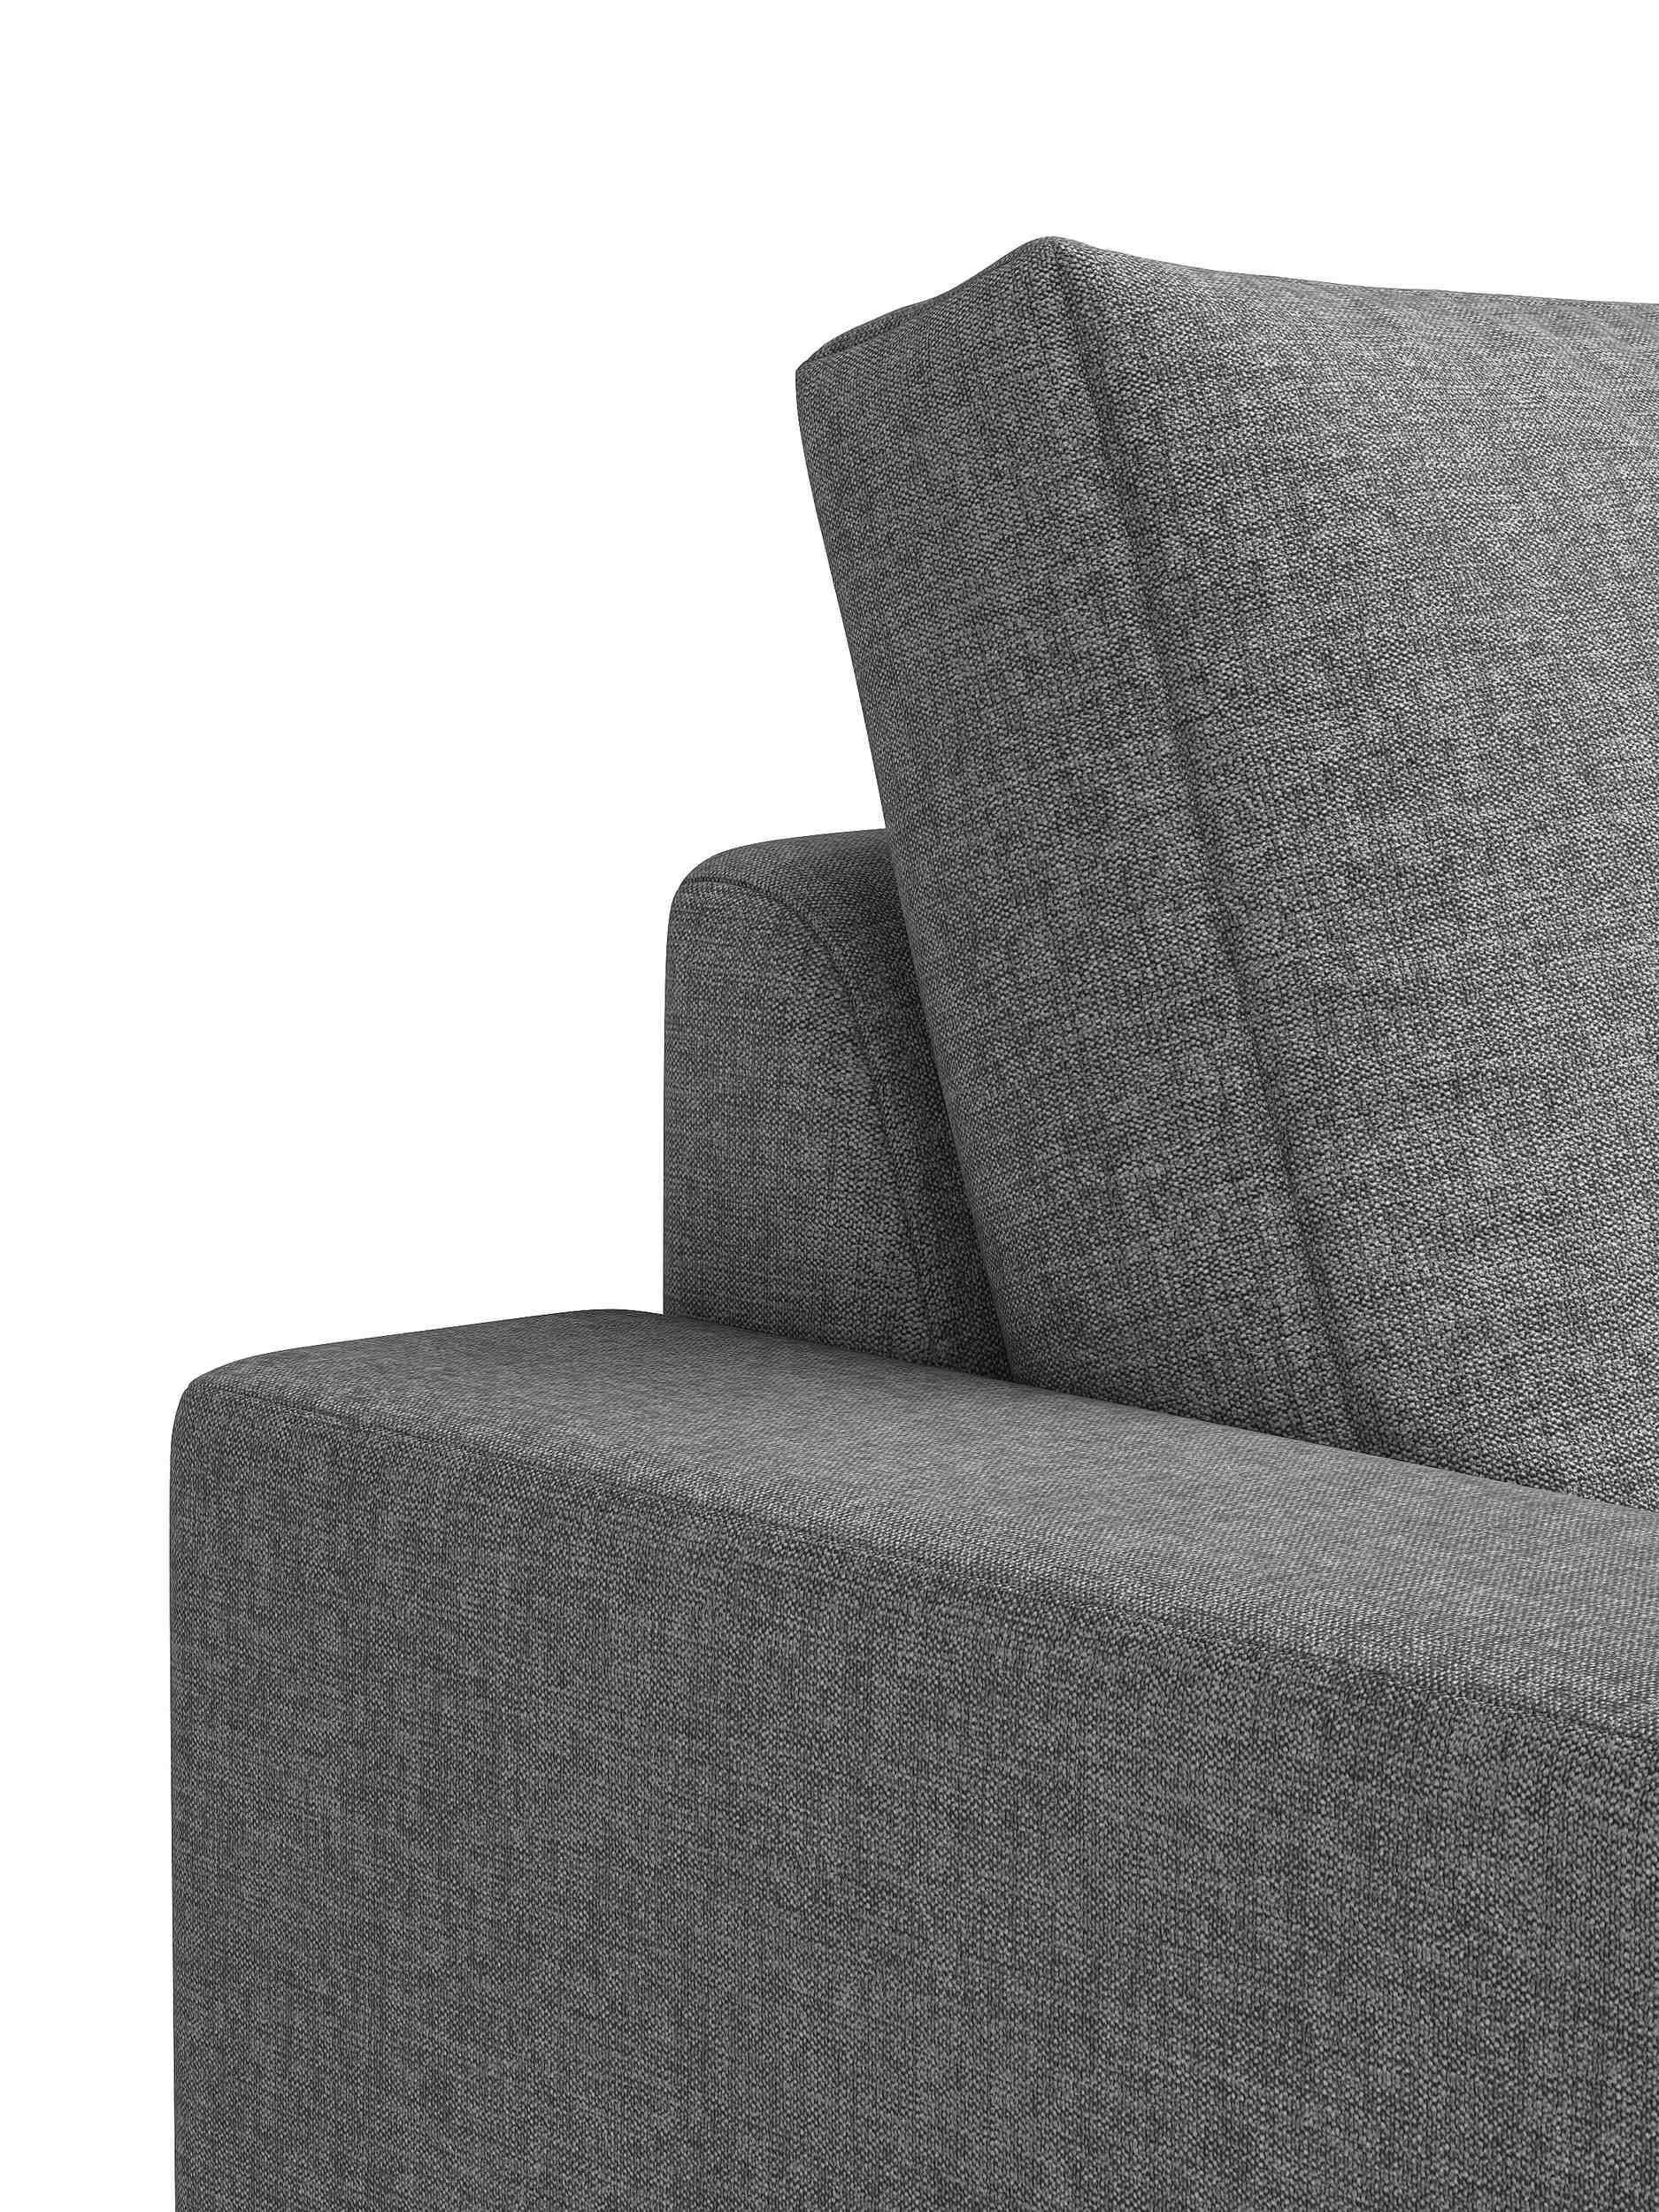 Design, Stylefy in mit Rückenlehne, stellbar, frei Armlehnen Raum Sofa, Sitzkomfort, Modern 3-Sitzer im Europa made und Erling, 2-Sitzer,